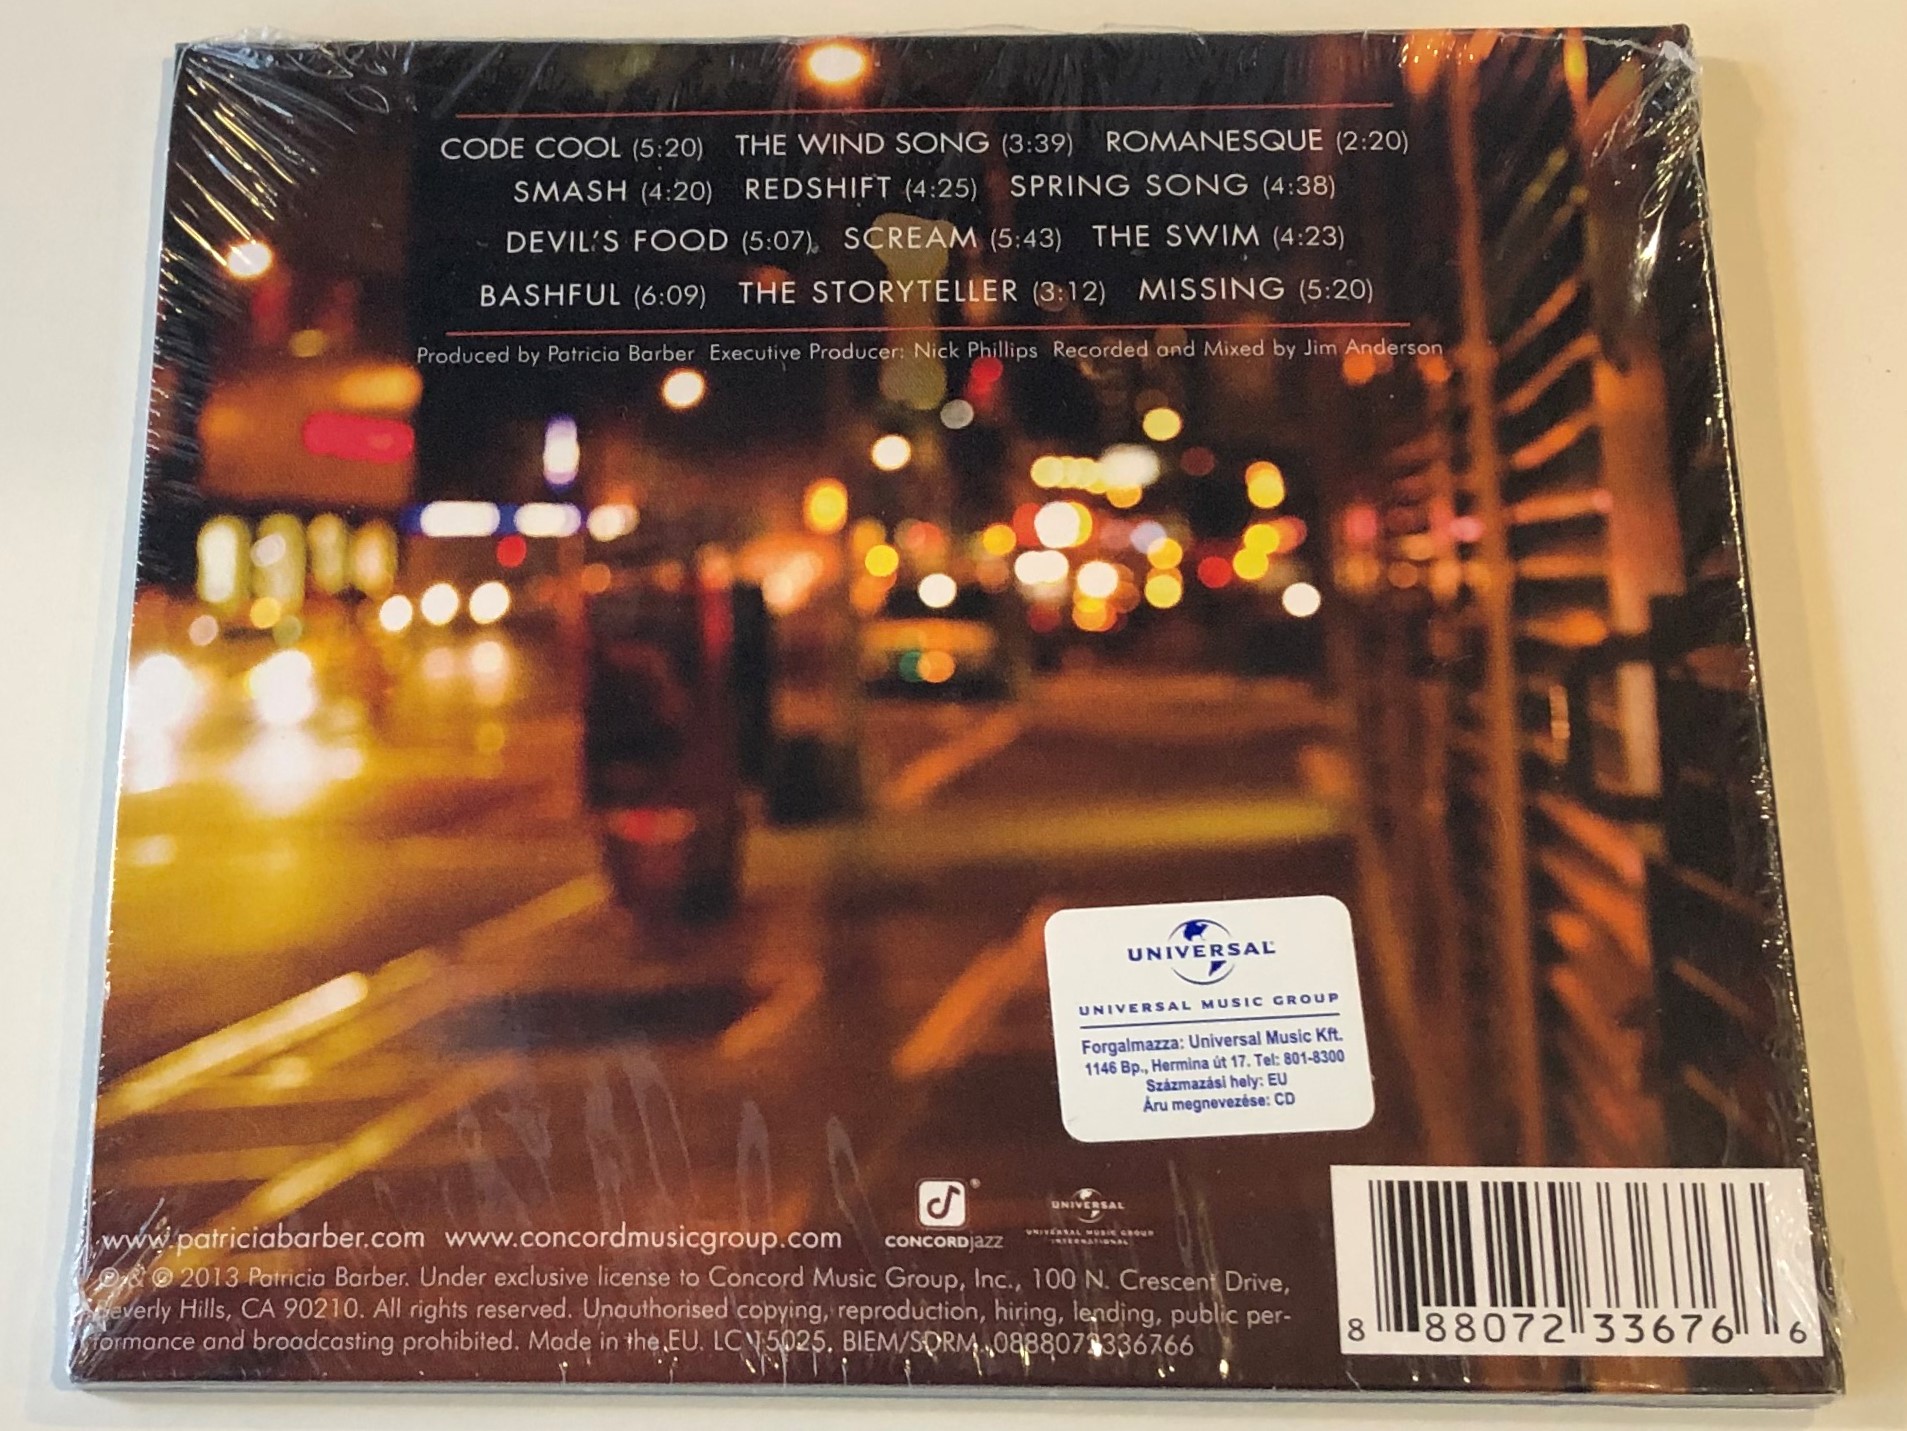 patricia-barber-smash-concord-jazz-audio-cd-2013-0888072336766-2-.jpg